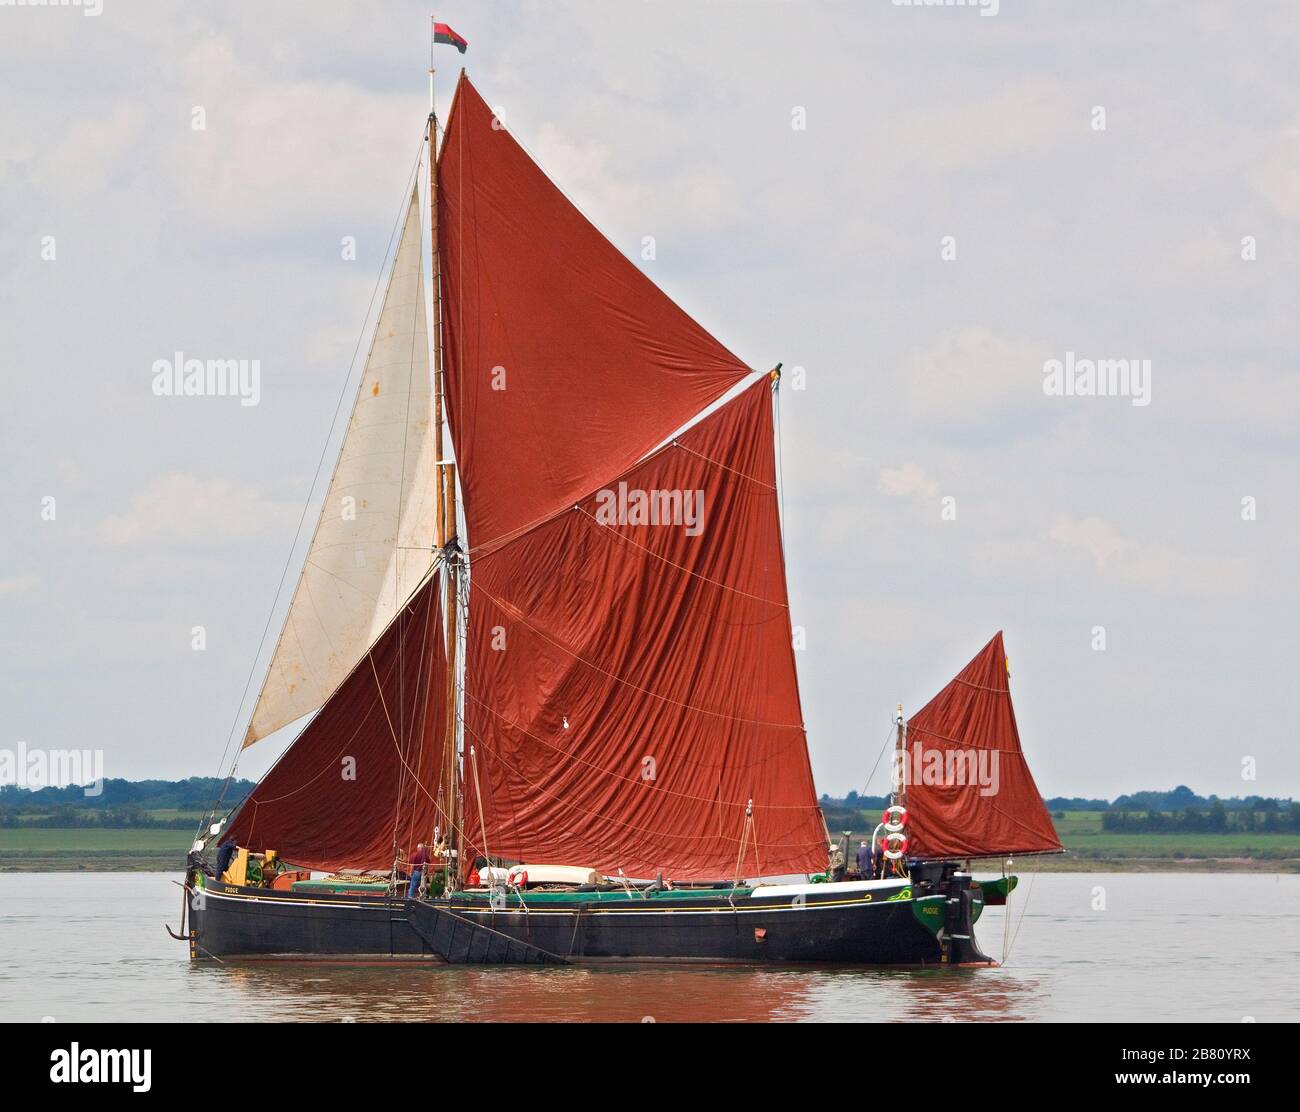 La barge de voile de la Tamise Pudge, un petit bateau de Dunkerque, en pleine voile Banque D'Images